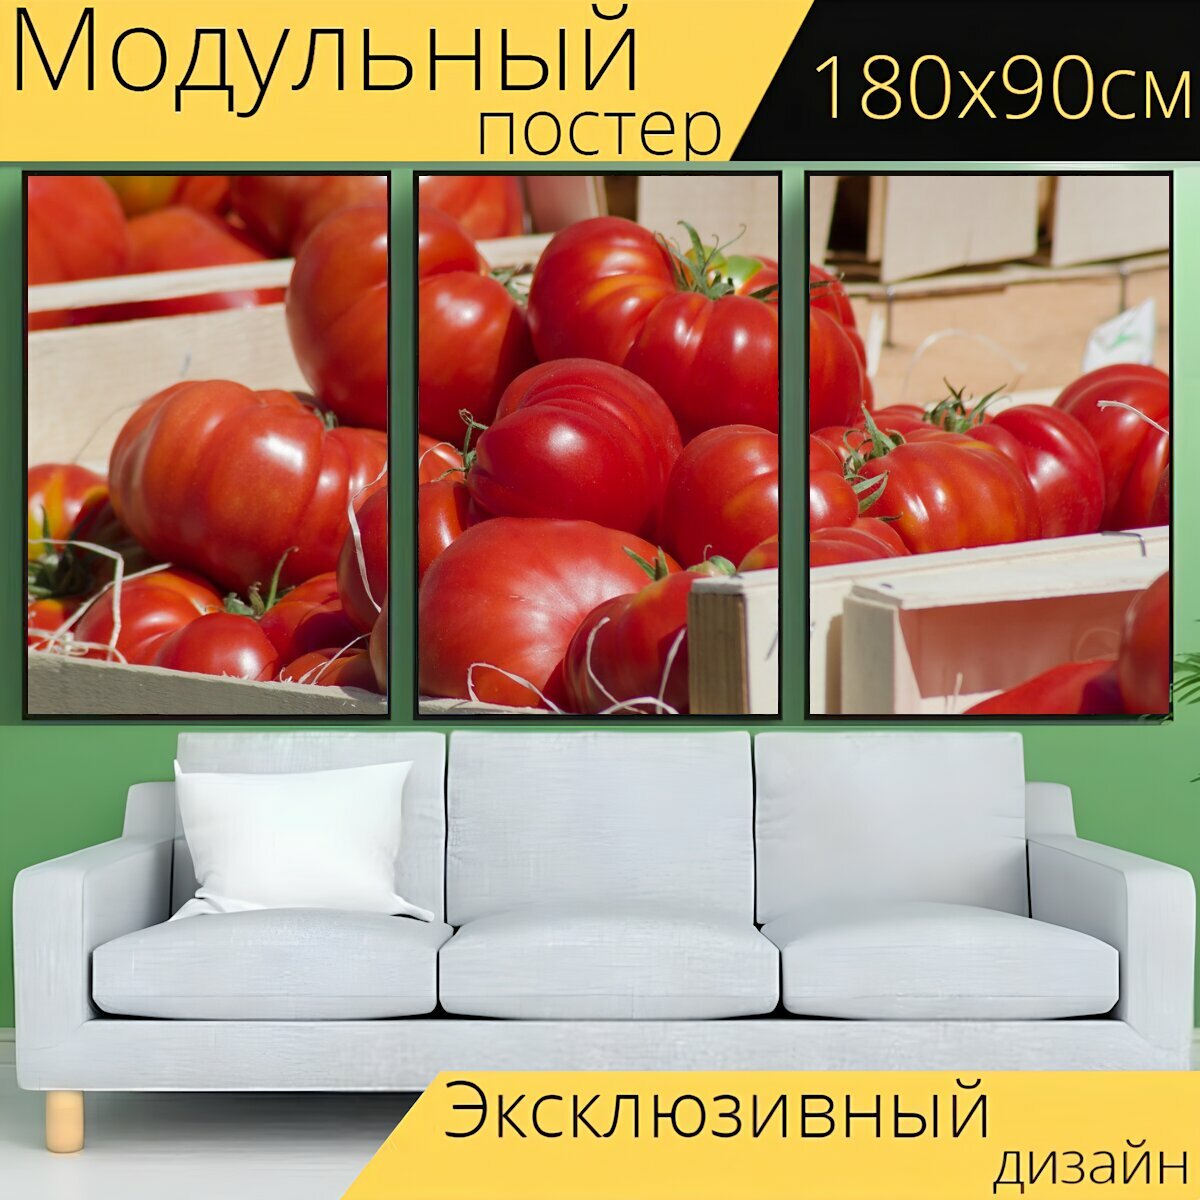 Модульный постер "Помидоры, овощи, рынок" 180 x 90 см. для интерьера